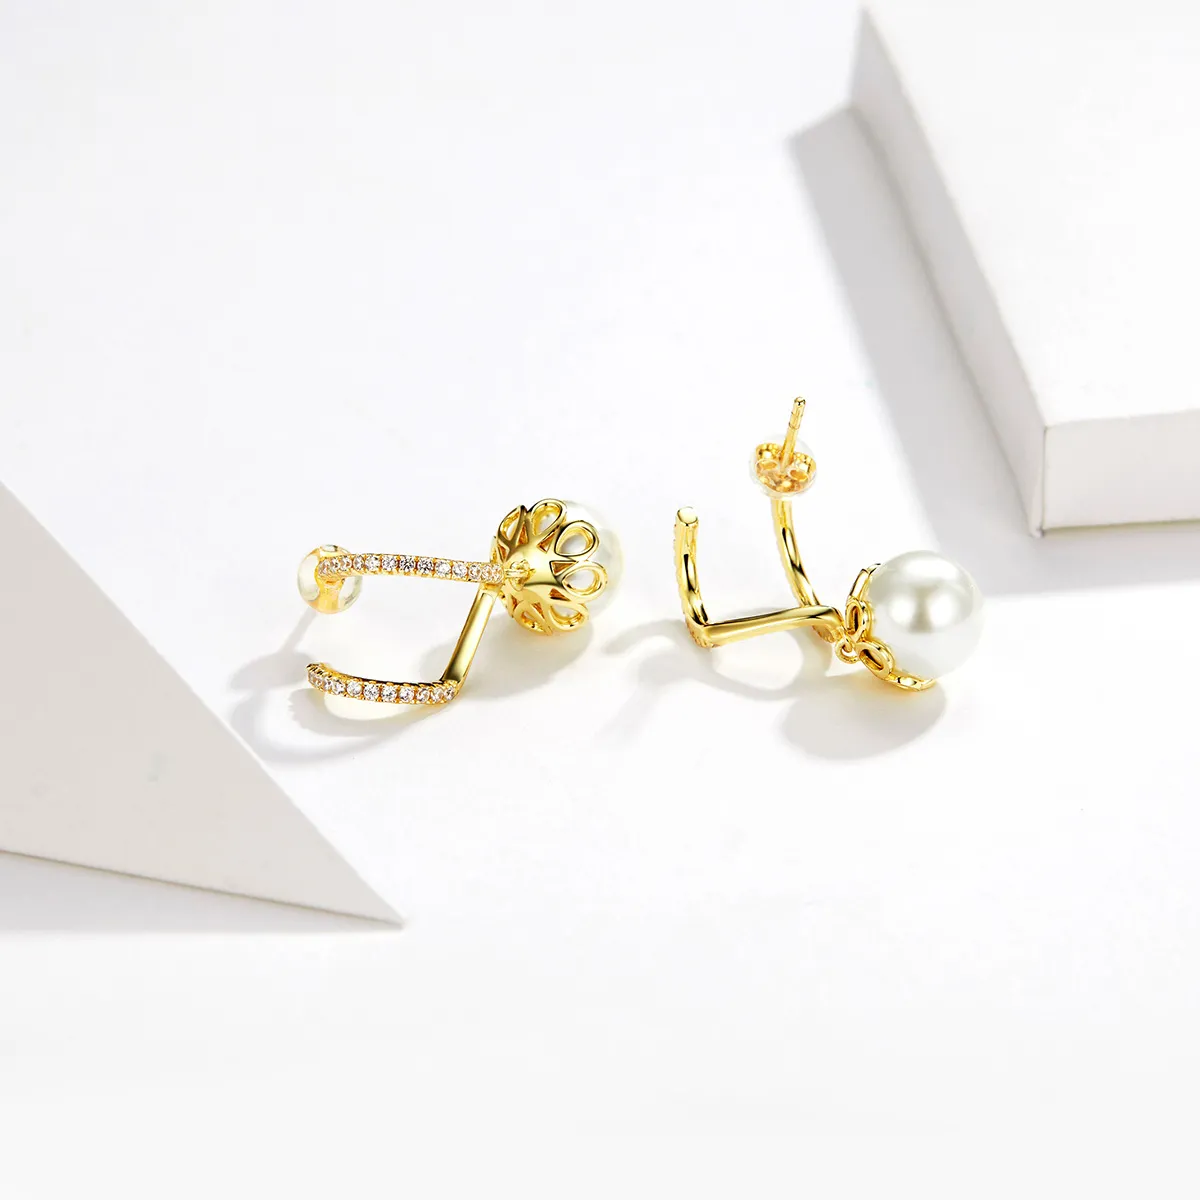 Studuri delicate cu perle în stilul Pandora - BSE151